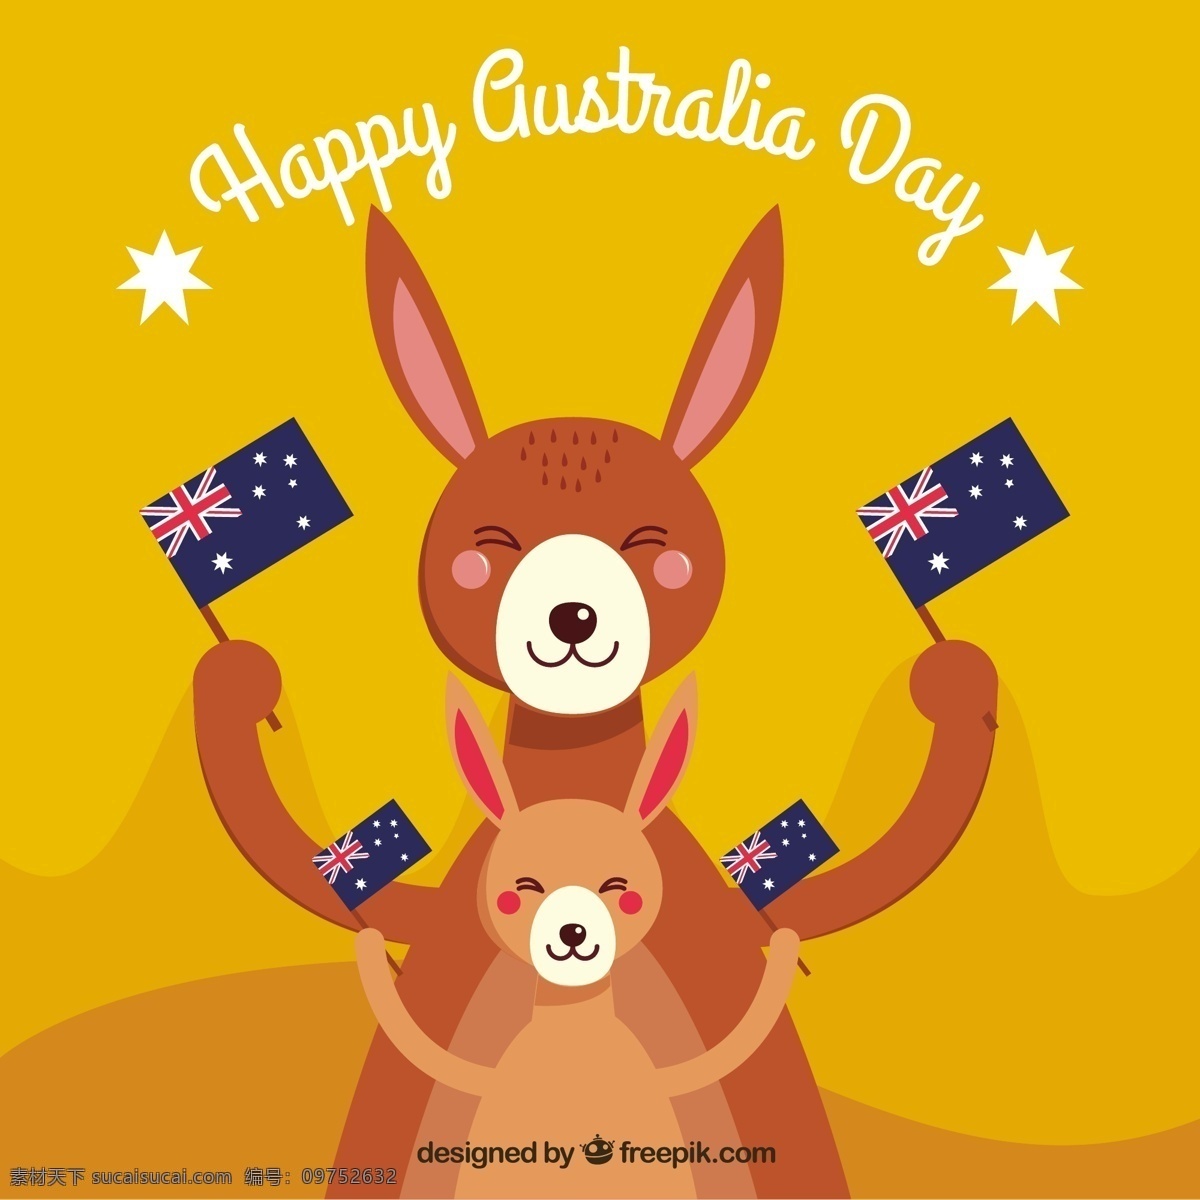 快乐 澳大利亚 日 面带微笑 袋鼠 旗子 背景 国旗 庆祝 平面 平面设计 自由 幸福 天 一月 控股 爱国 微笑 民族 国家